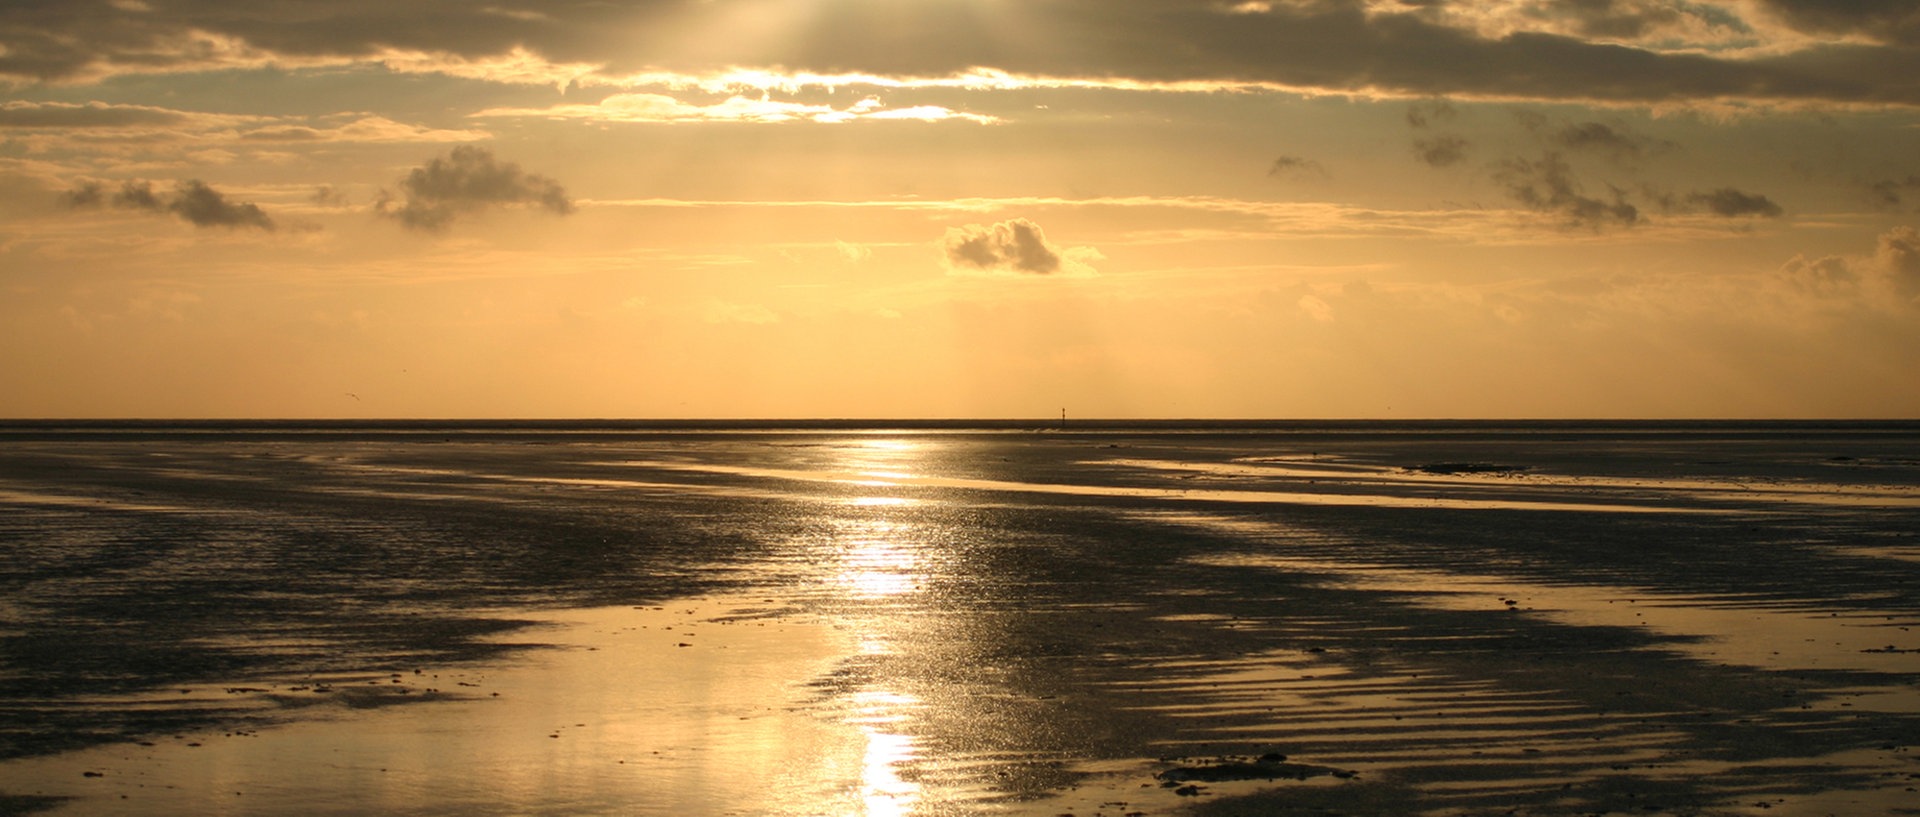 Ein Sonnenuntergang über dem Meer., © Dick Egmond / photocase.deFoto: Dick Egmond / photocase.de